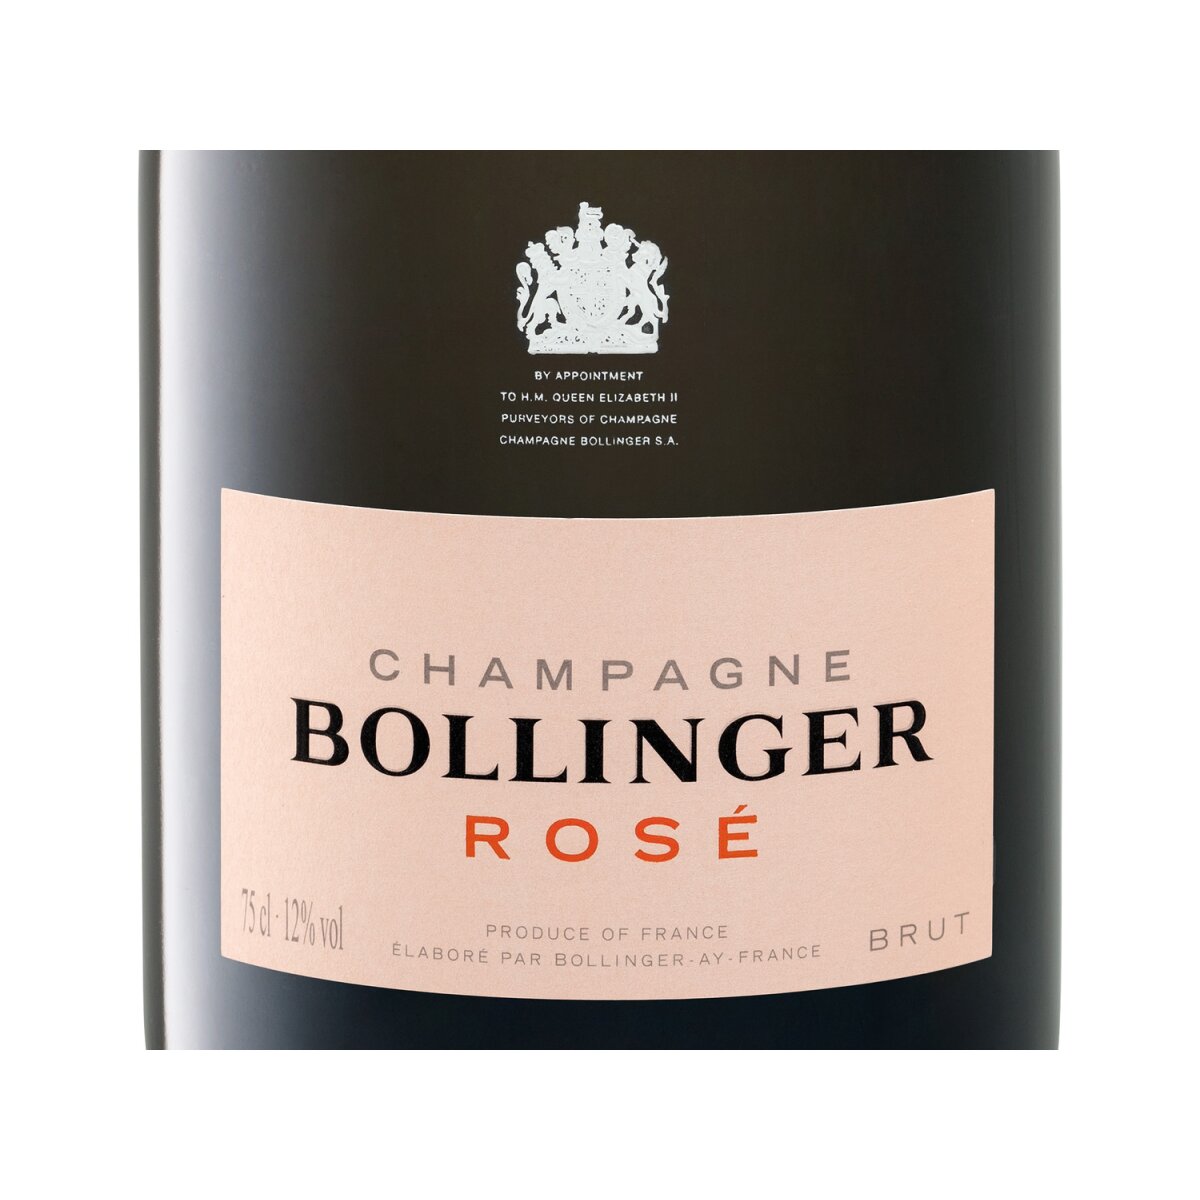 64,99 Bollinger Geschenkbox, brut € Rosé mit Champagner,